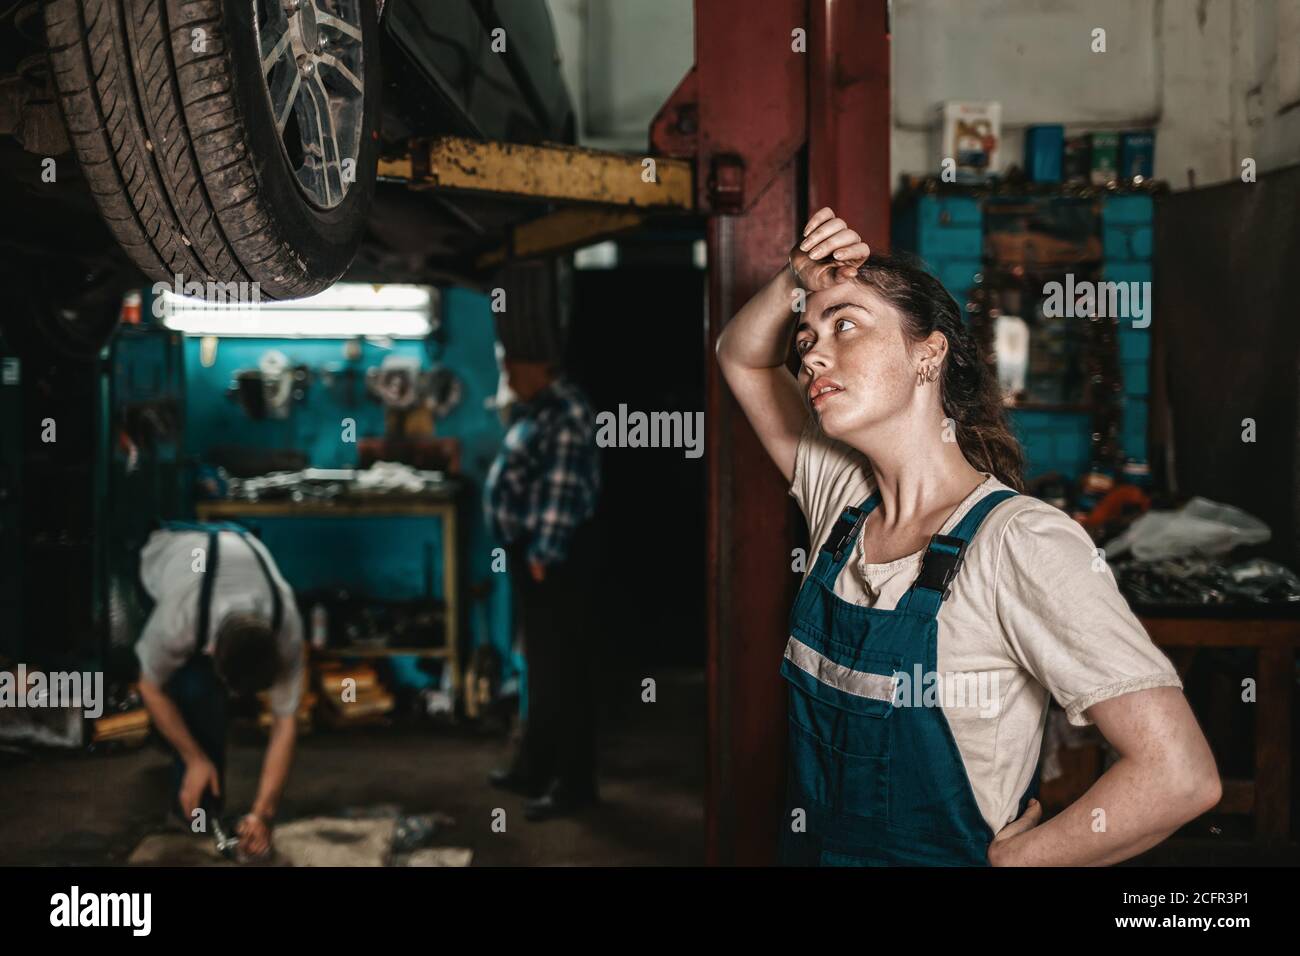 El concepto de la pequeña empresa, el feminismo y la igualdad de las mujeres. Una joven mecánica de automóviles se limpia wearily sudor de su frente. Foto de stock